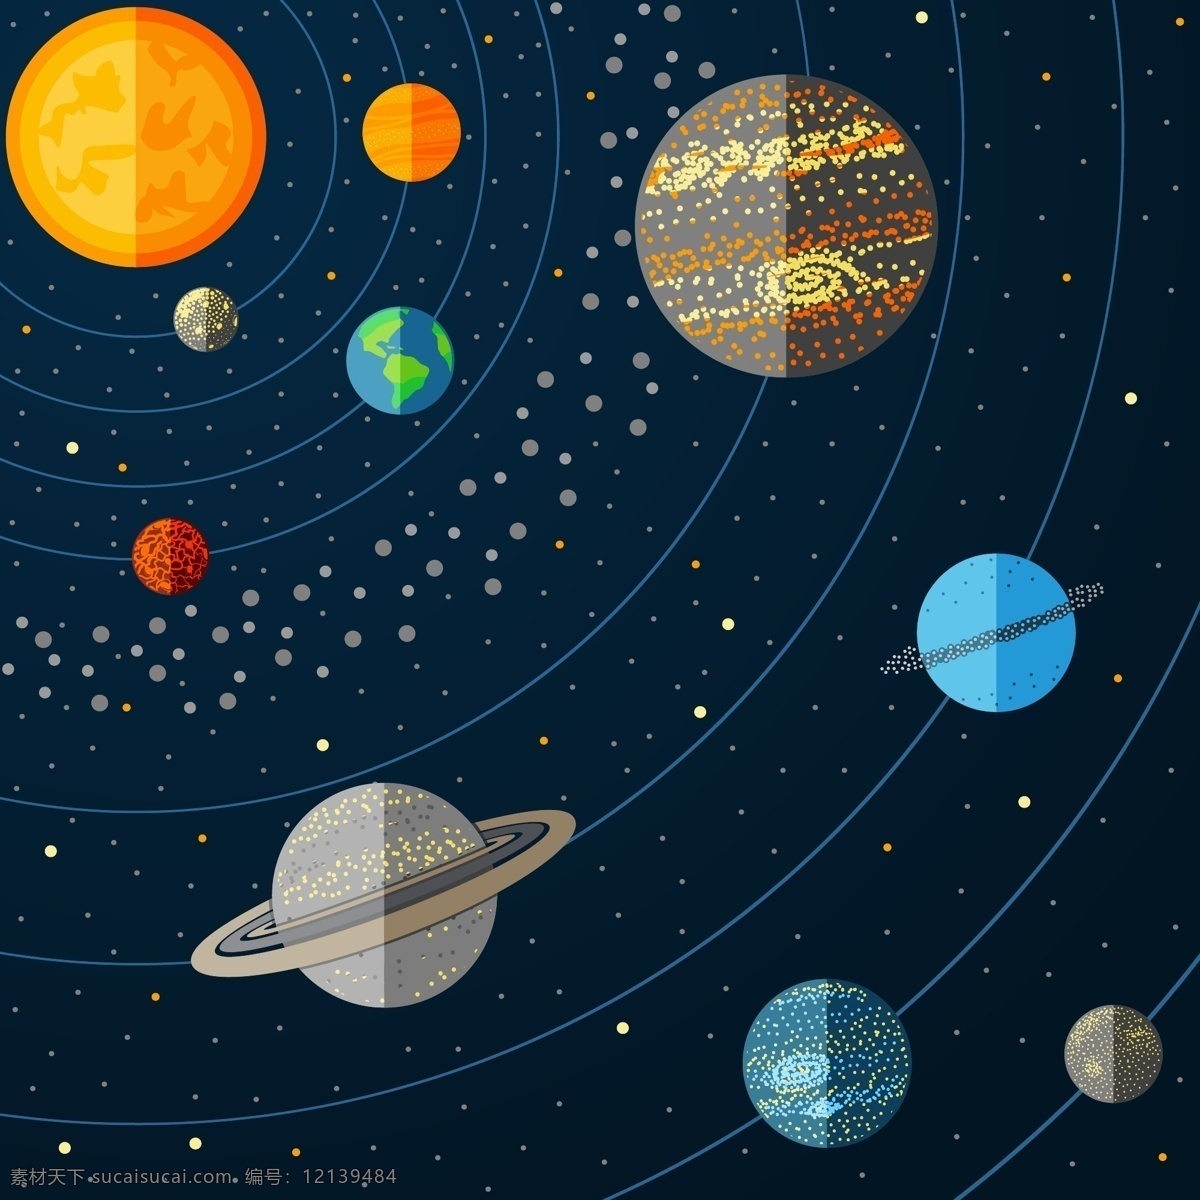 太阳系 行星 插图 矢量 宇宙 太空 星球 星系 地球 太阳 卫星 星空 空间 小行星 火箭 探索 科学 天文学 球体 卡通插画 商务金融 商业插画